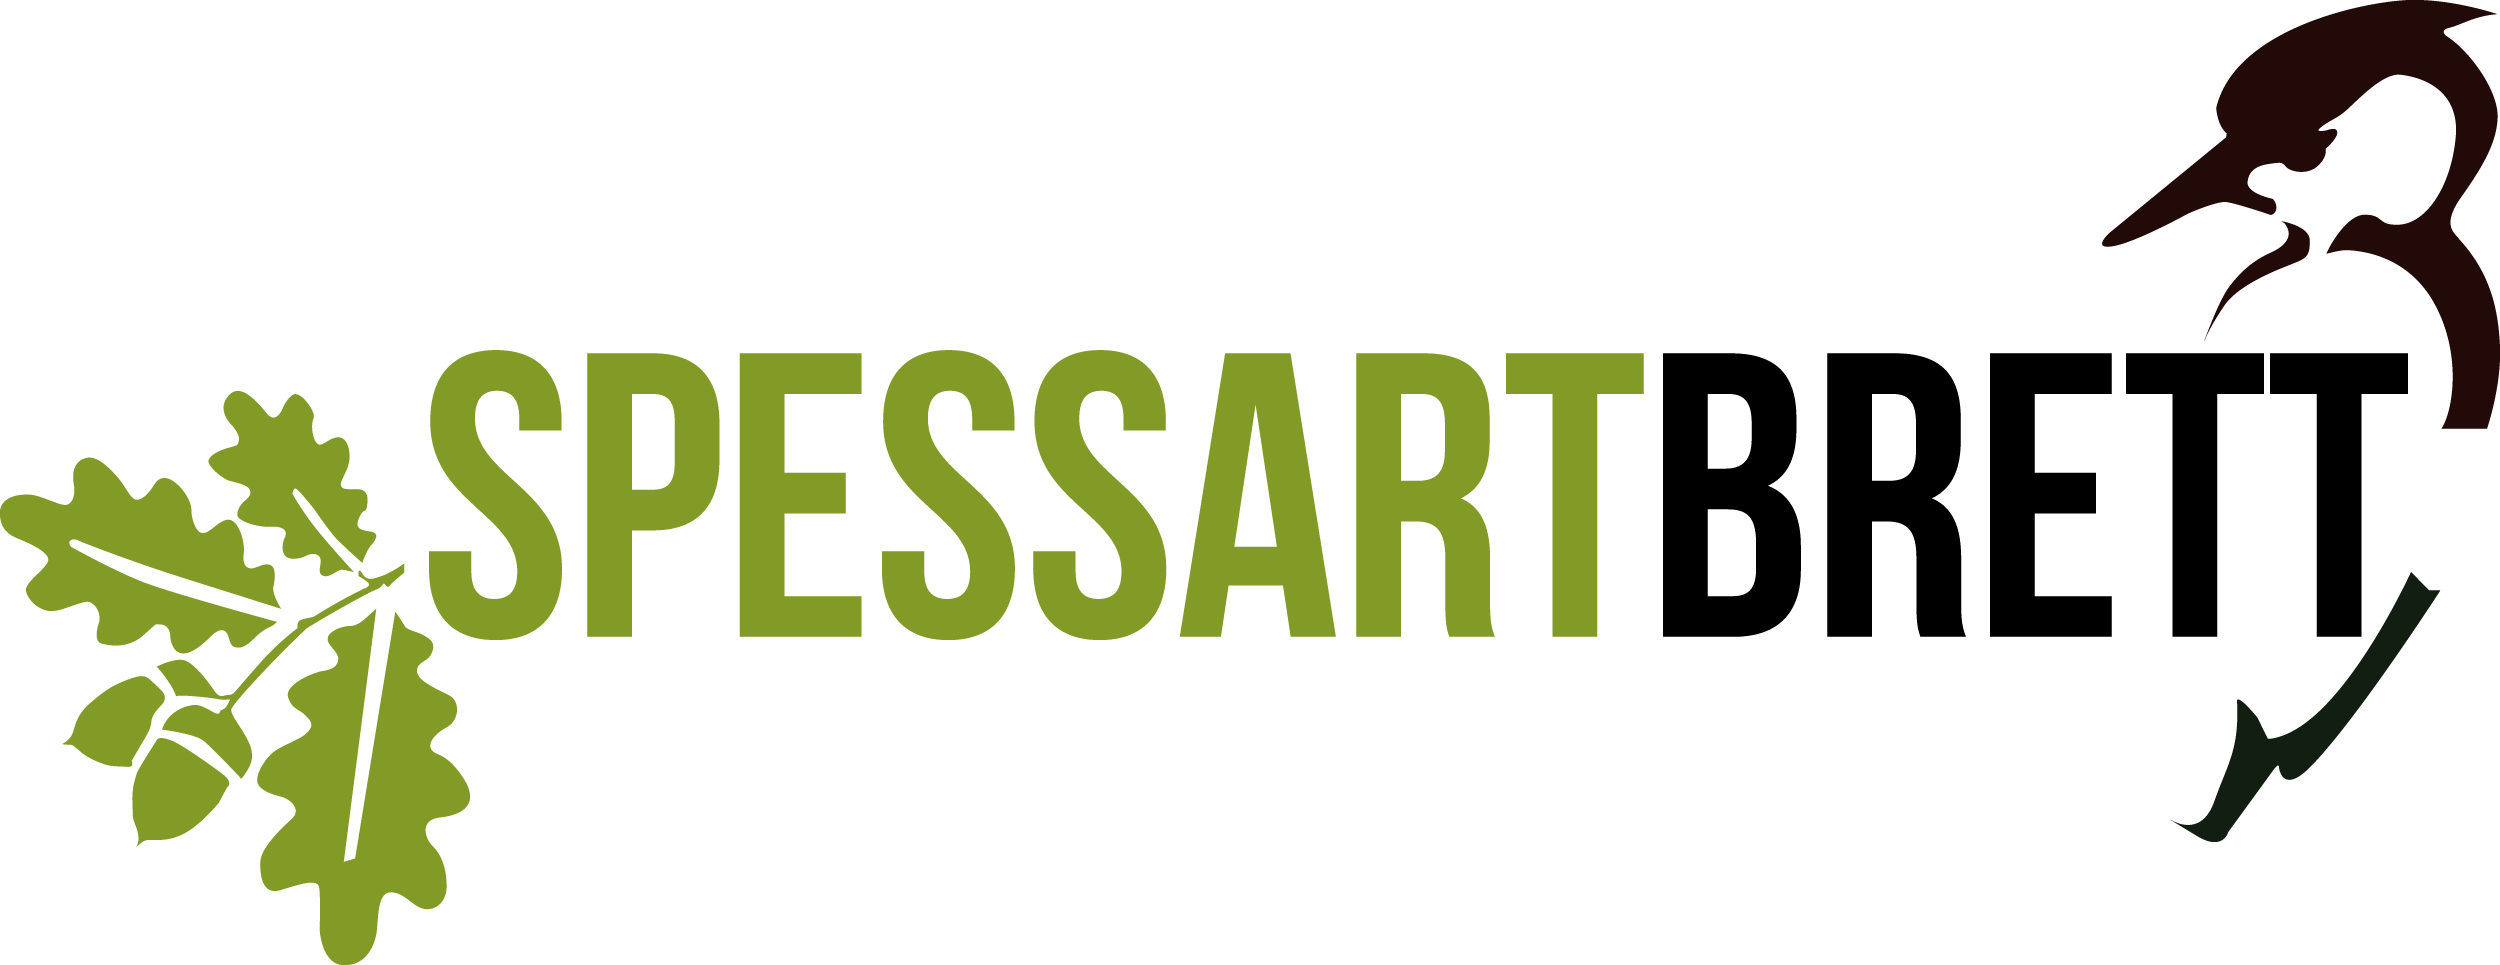 Spessartbrett-Logo